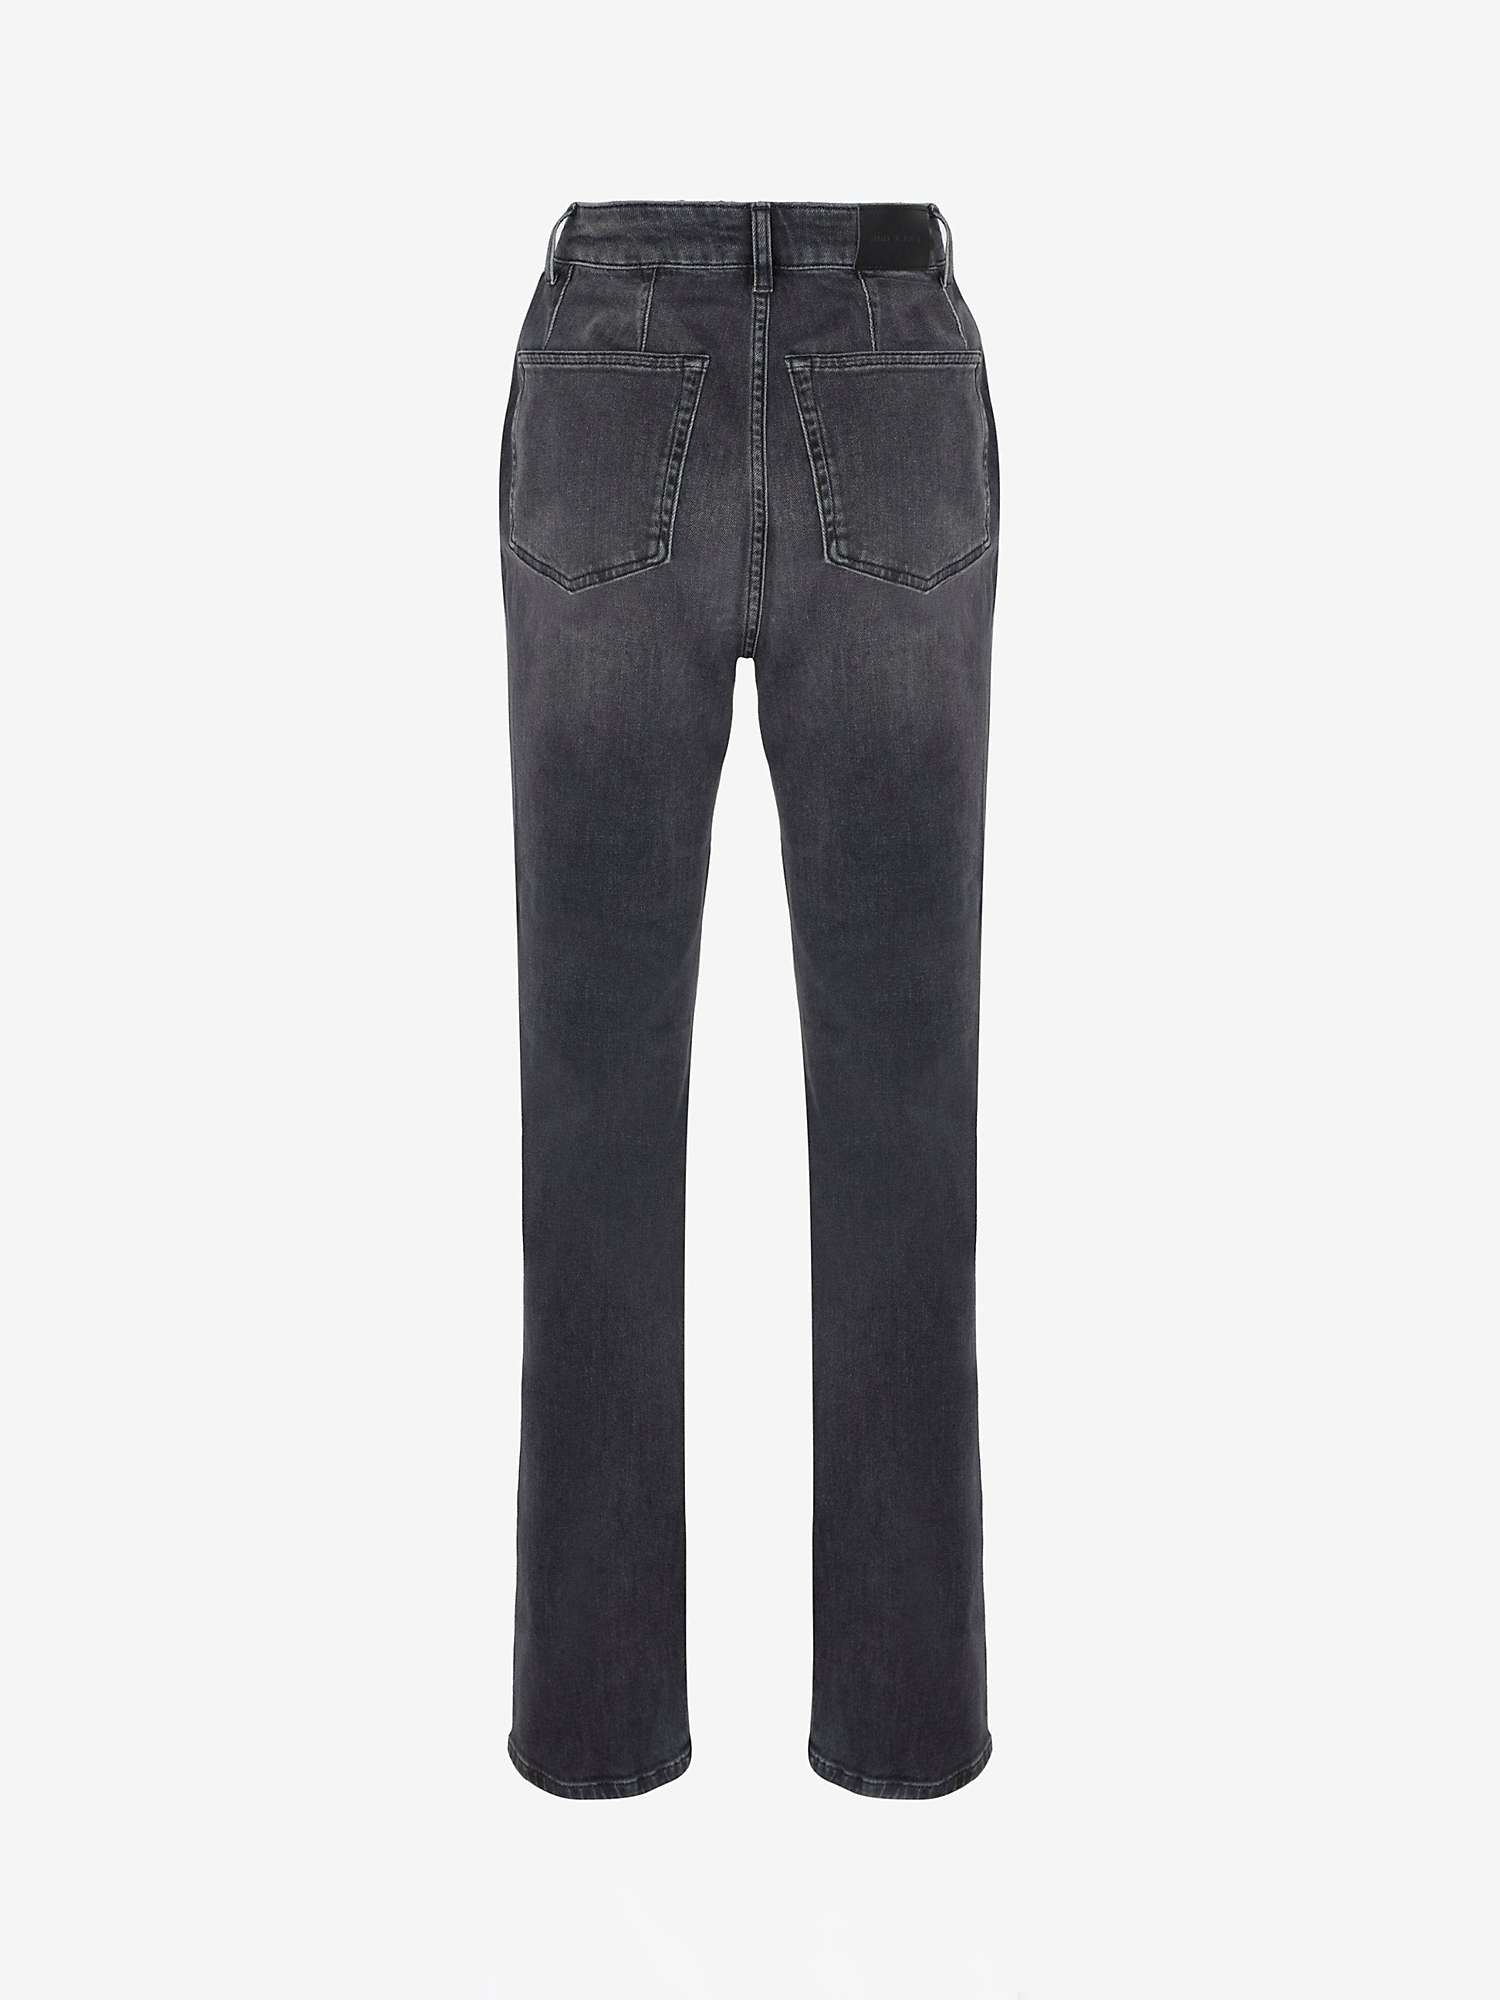 Buy Mint Velvet Washed Slim Fit Jeans, Black Online at johnlewis.com